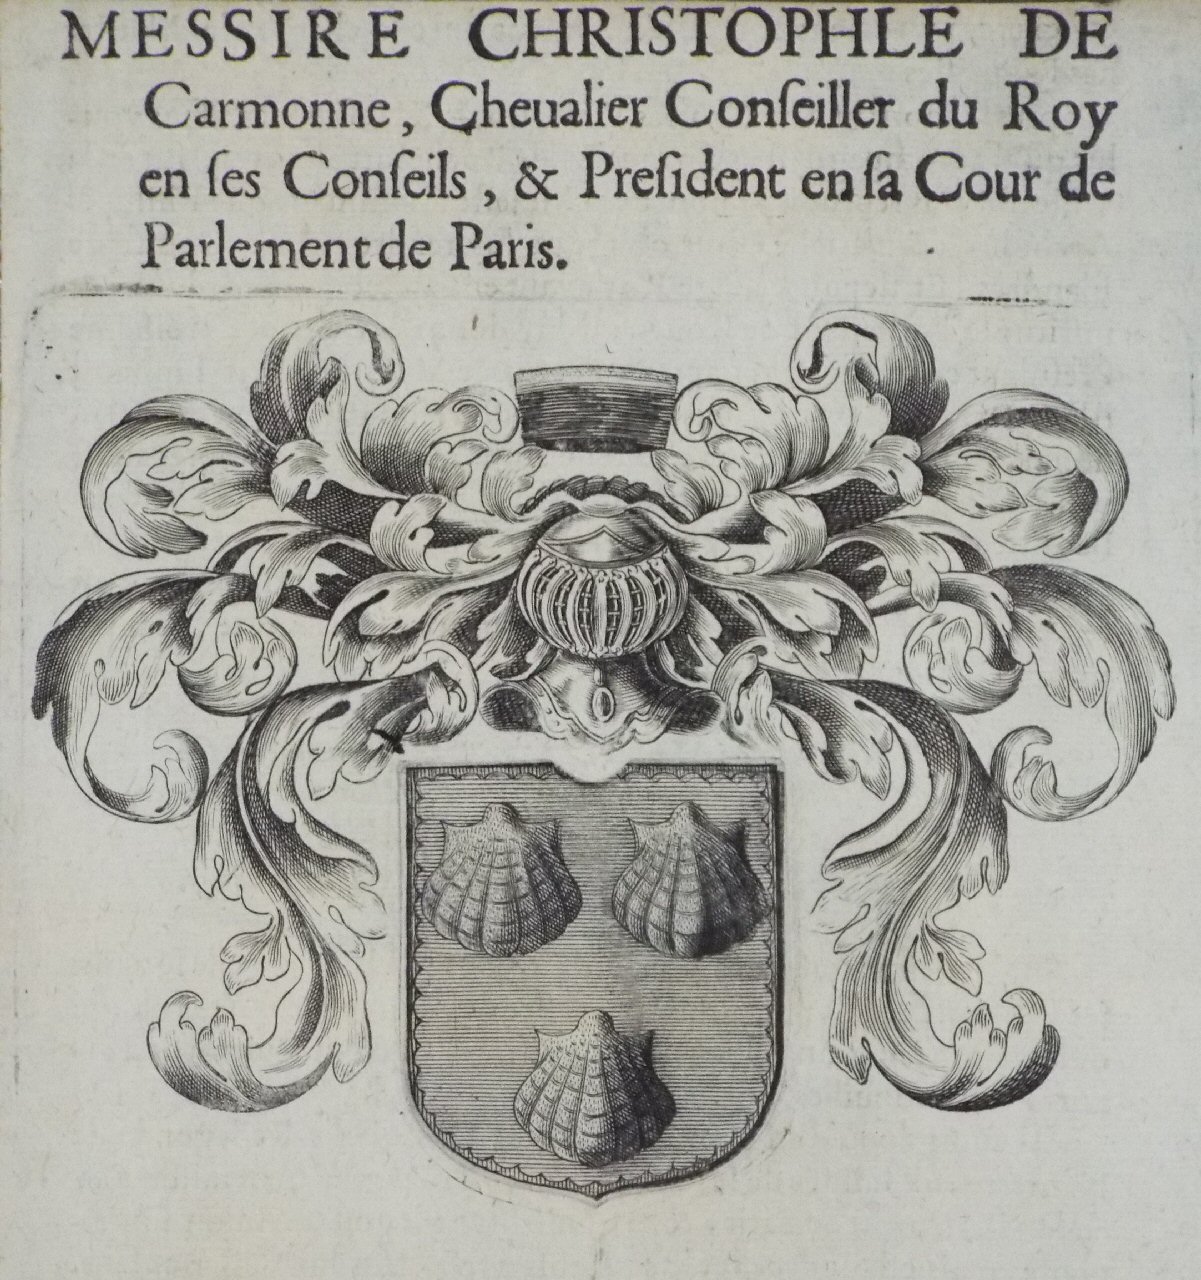 Print - Messire Christophle de Carmonne, Chevalier Conseiller du Roy en ses Conseils, & President en sa Cour de Parlement de Paris.